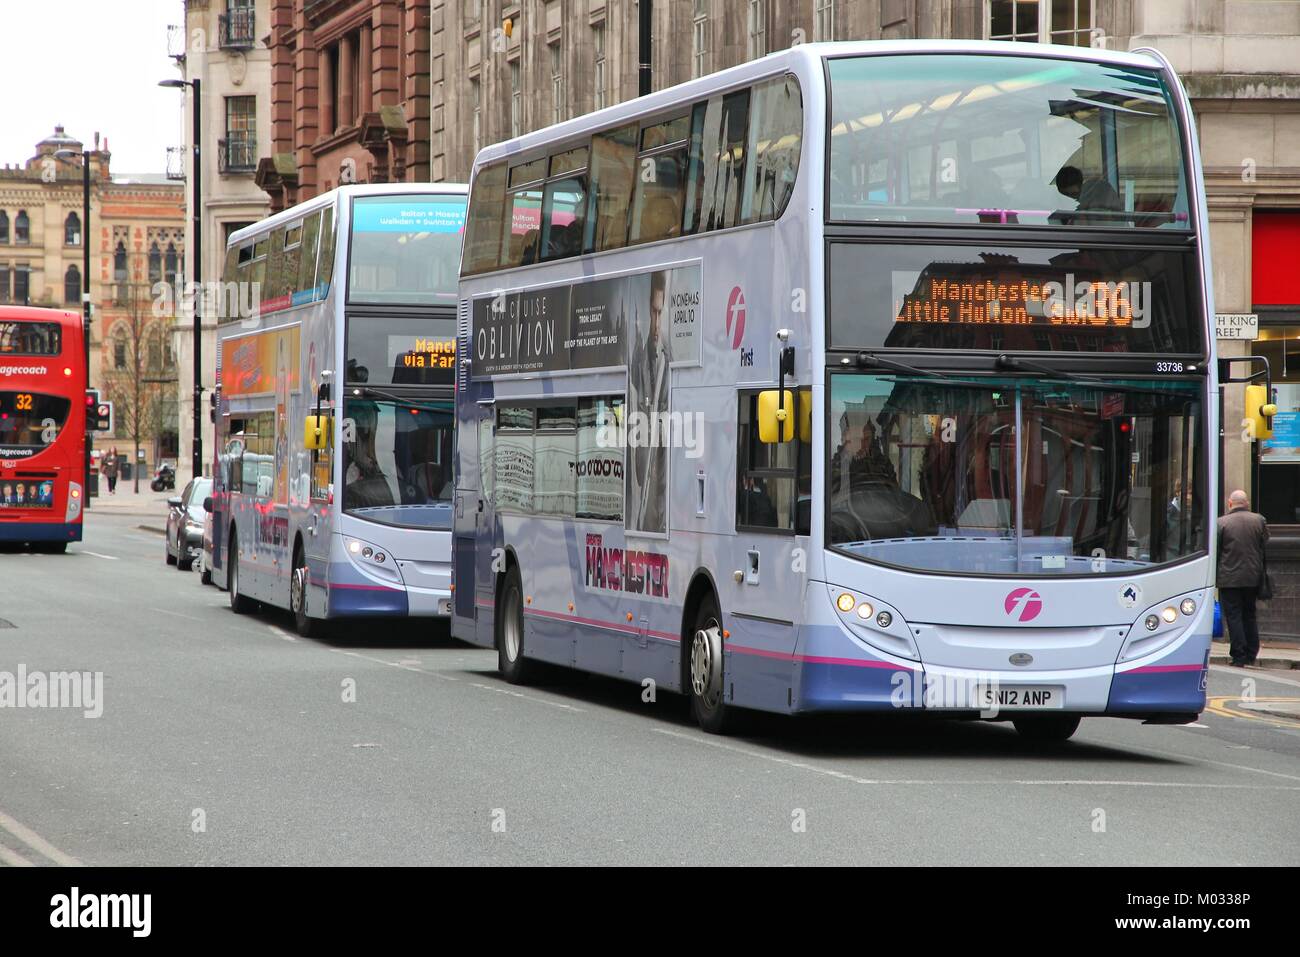 MANCHESTER, Regno Unito - 22 aprile: persone ride FirstGroup autobus della città il 22 aprile 2013 a Manchester, UK. FirstGroup impiega 124.000 persone. Foto Stock